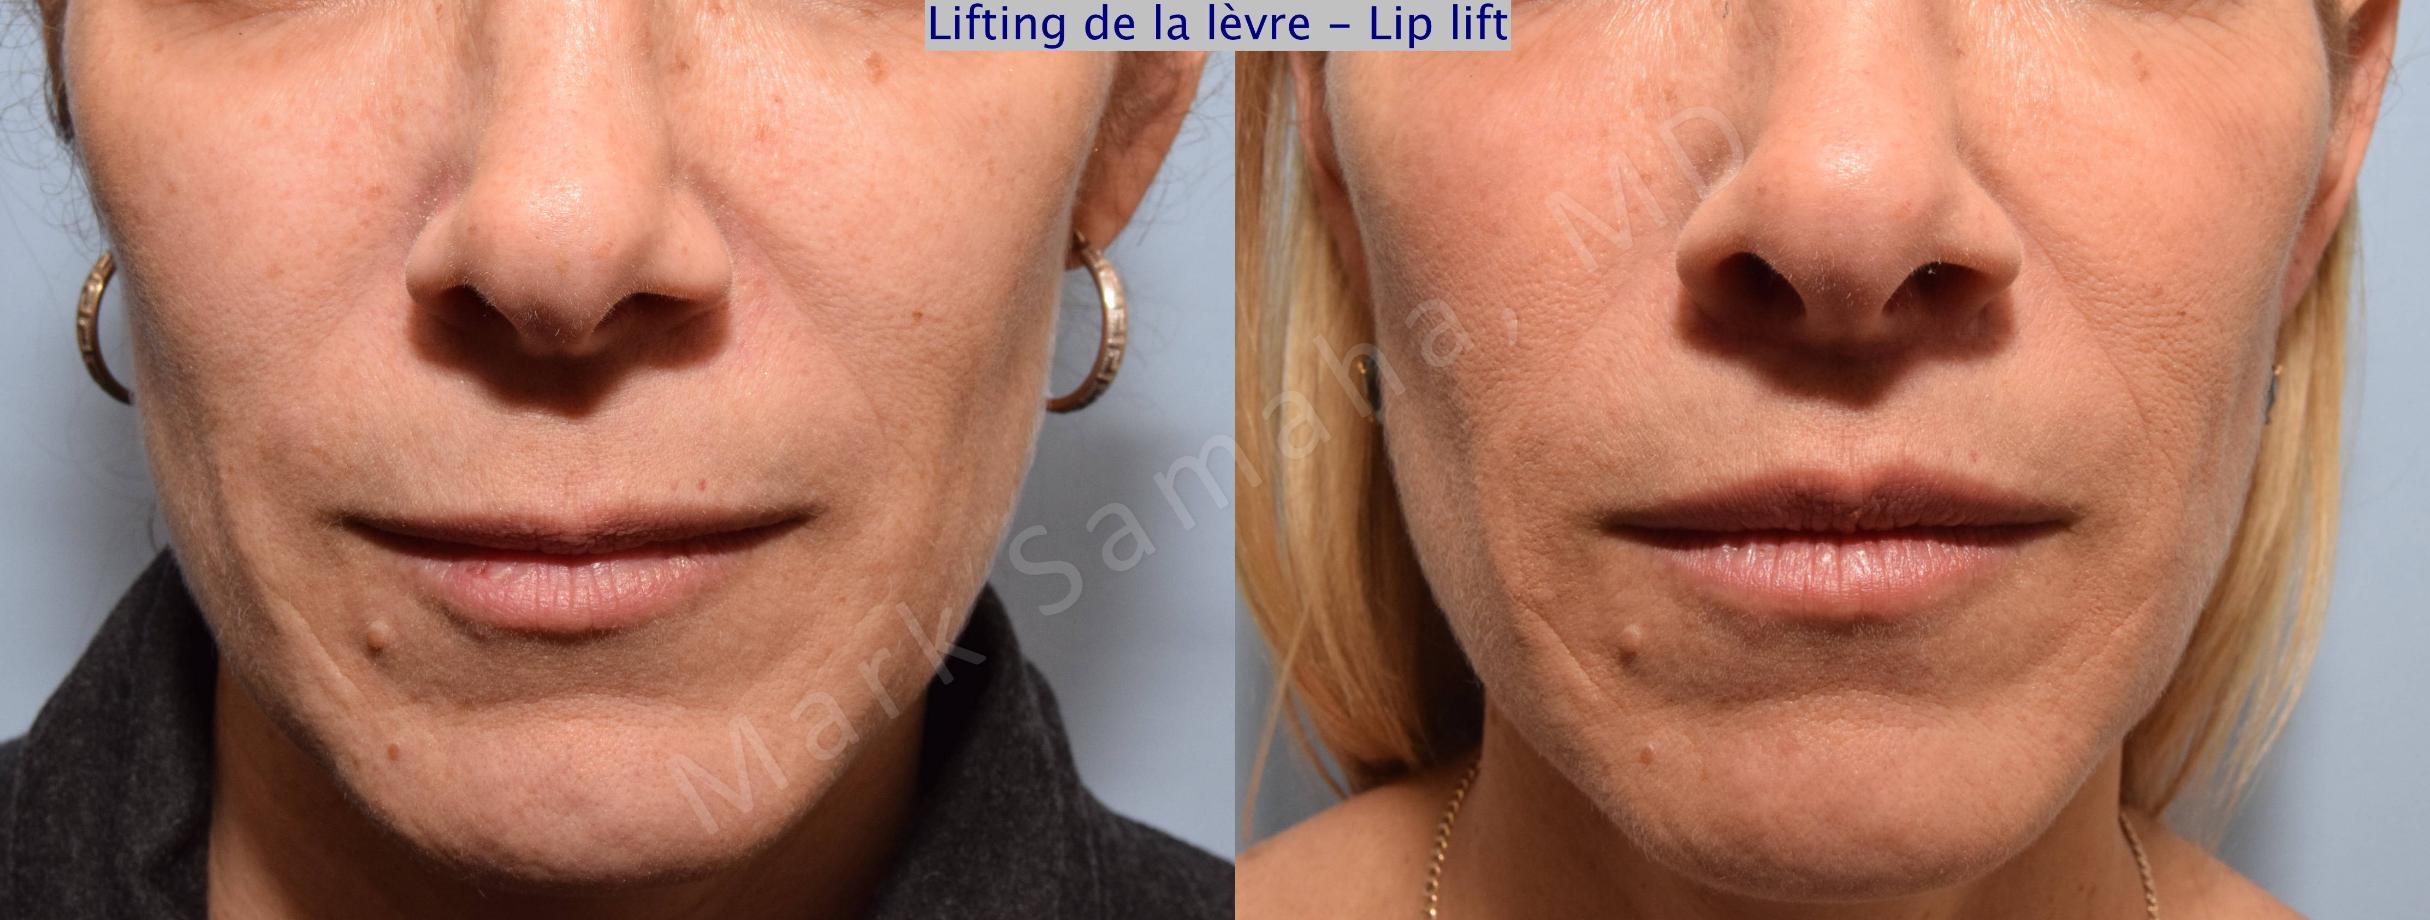 Before & After Lip Lift / Lifting de la lèvre supérieure Case 73 View #1 View in Mount Royal, QC